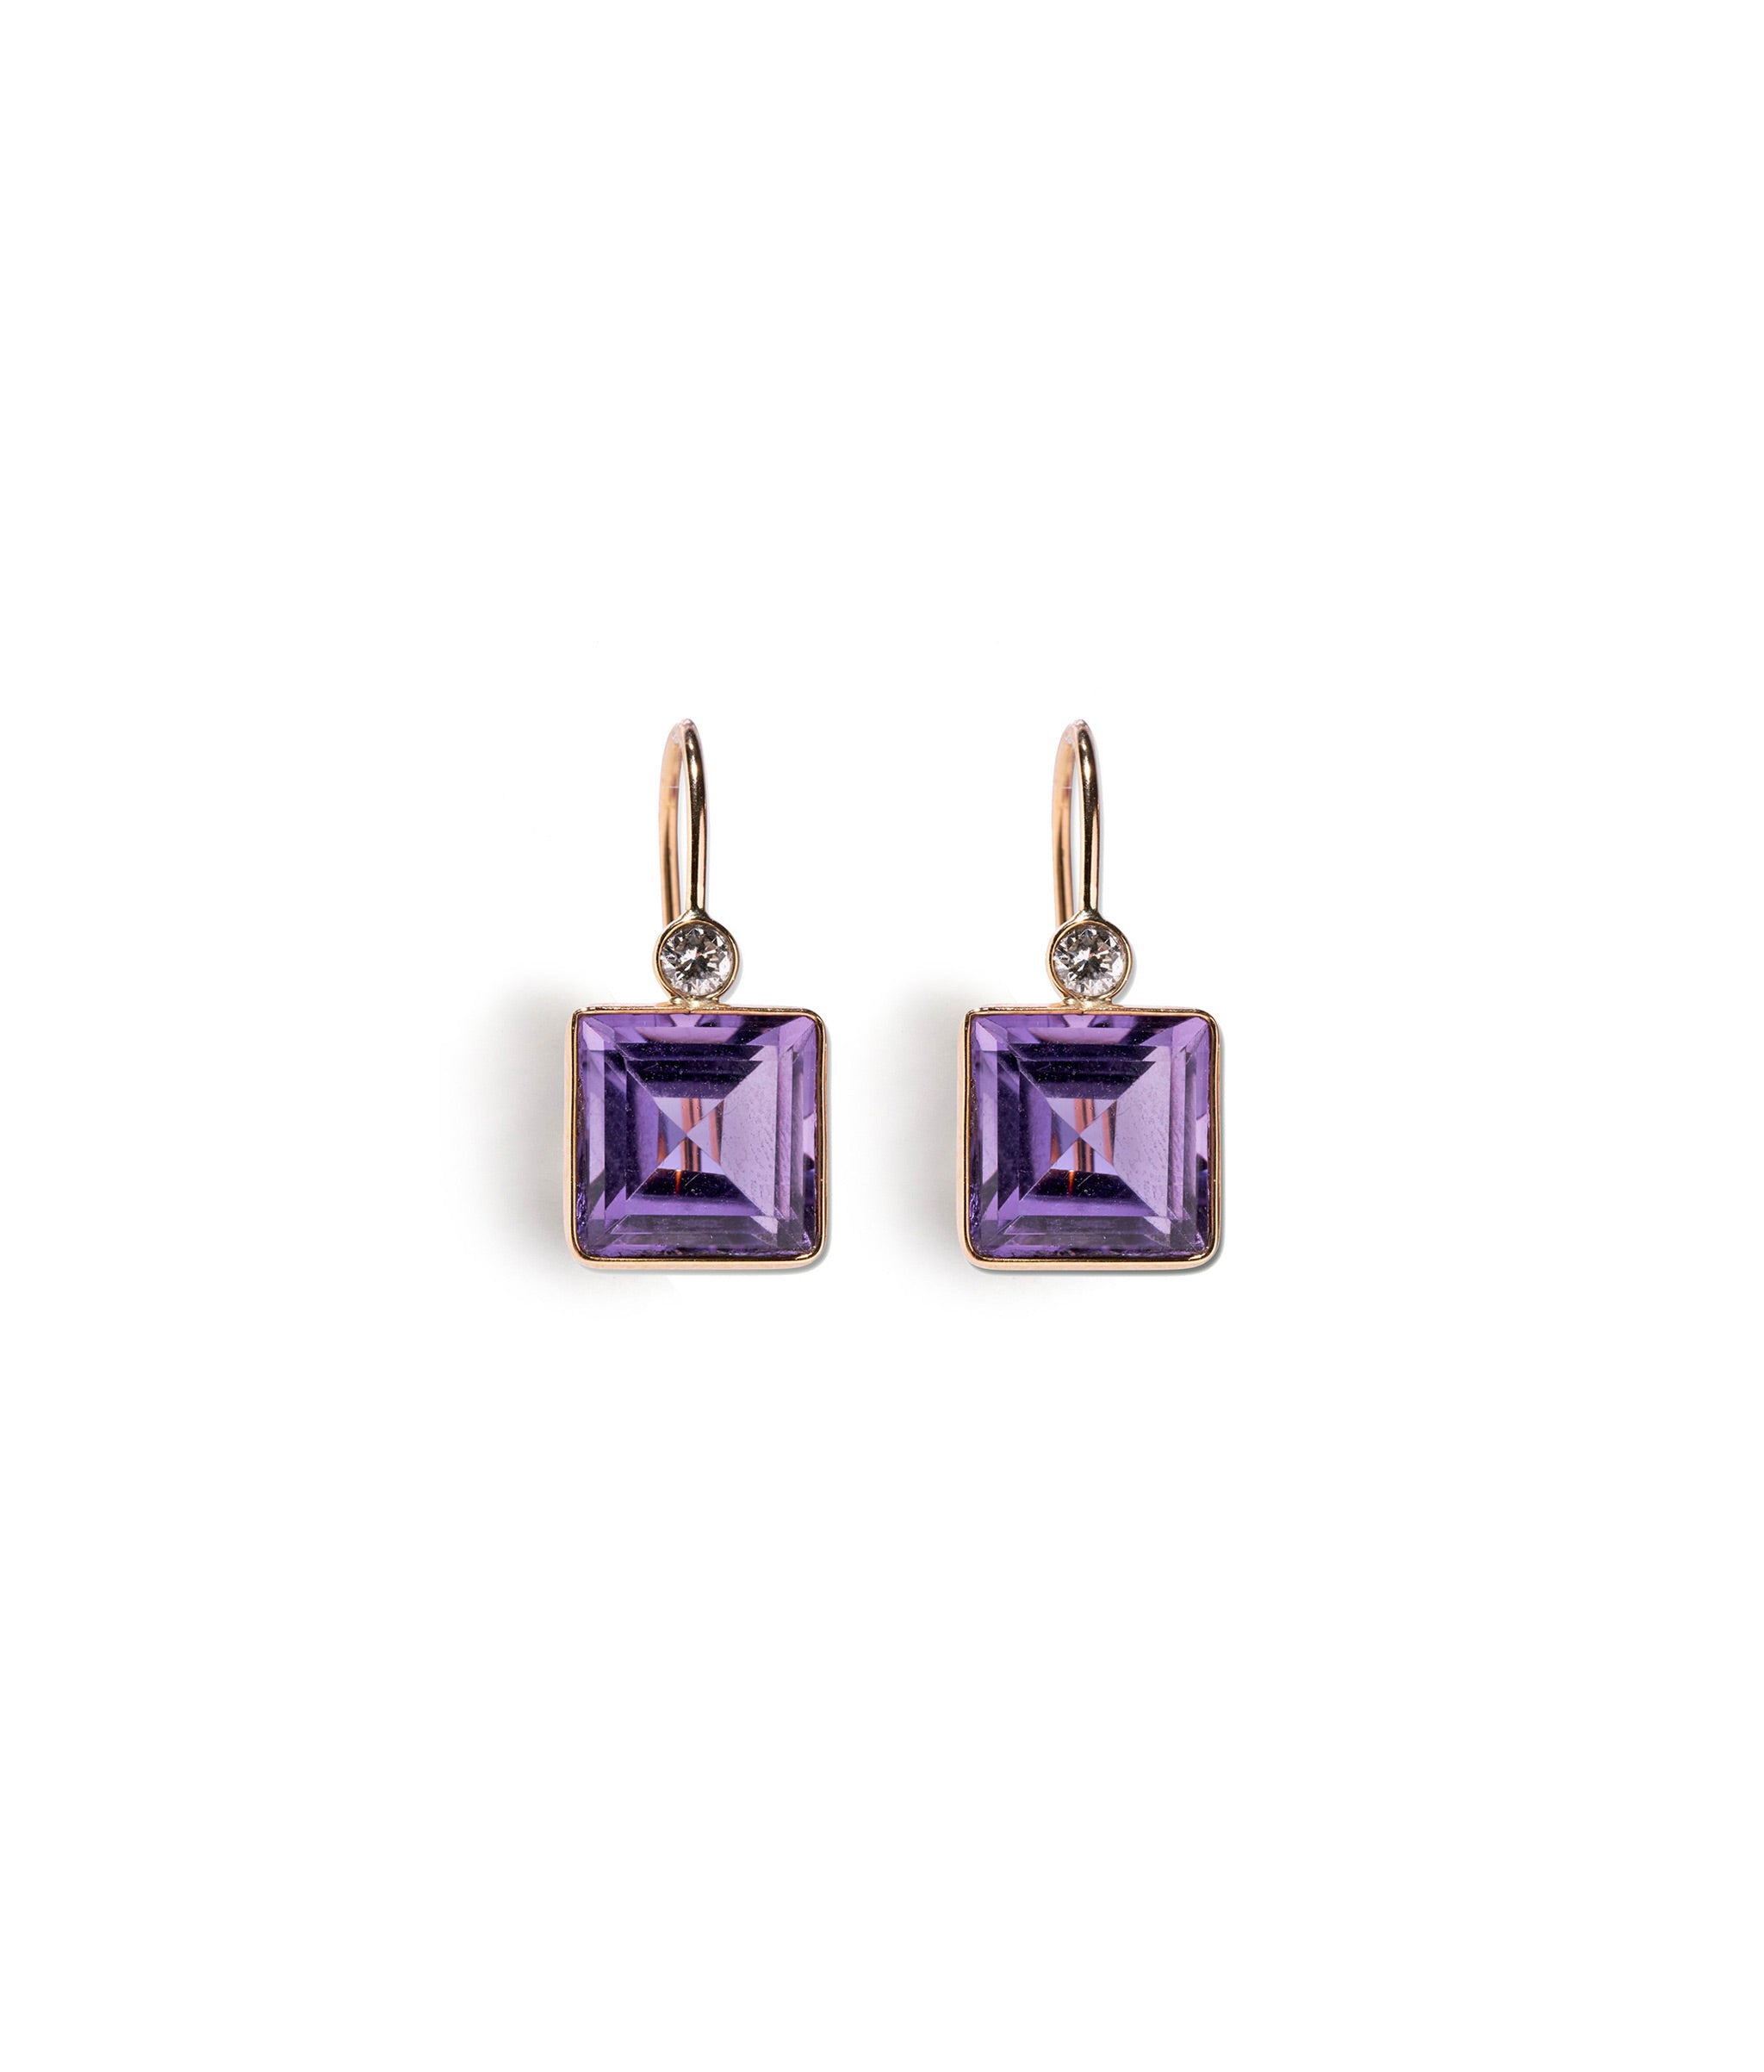 King Earrings In Amethyst & Diamond. Faceted square amethyst stone earrings with diamond detail and 14k gold bezels.